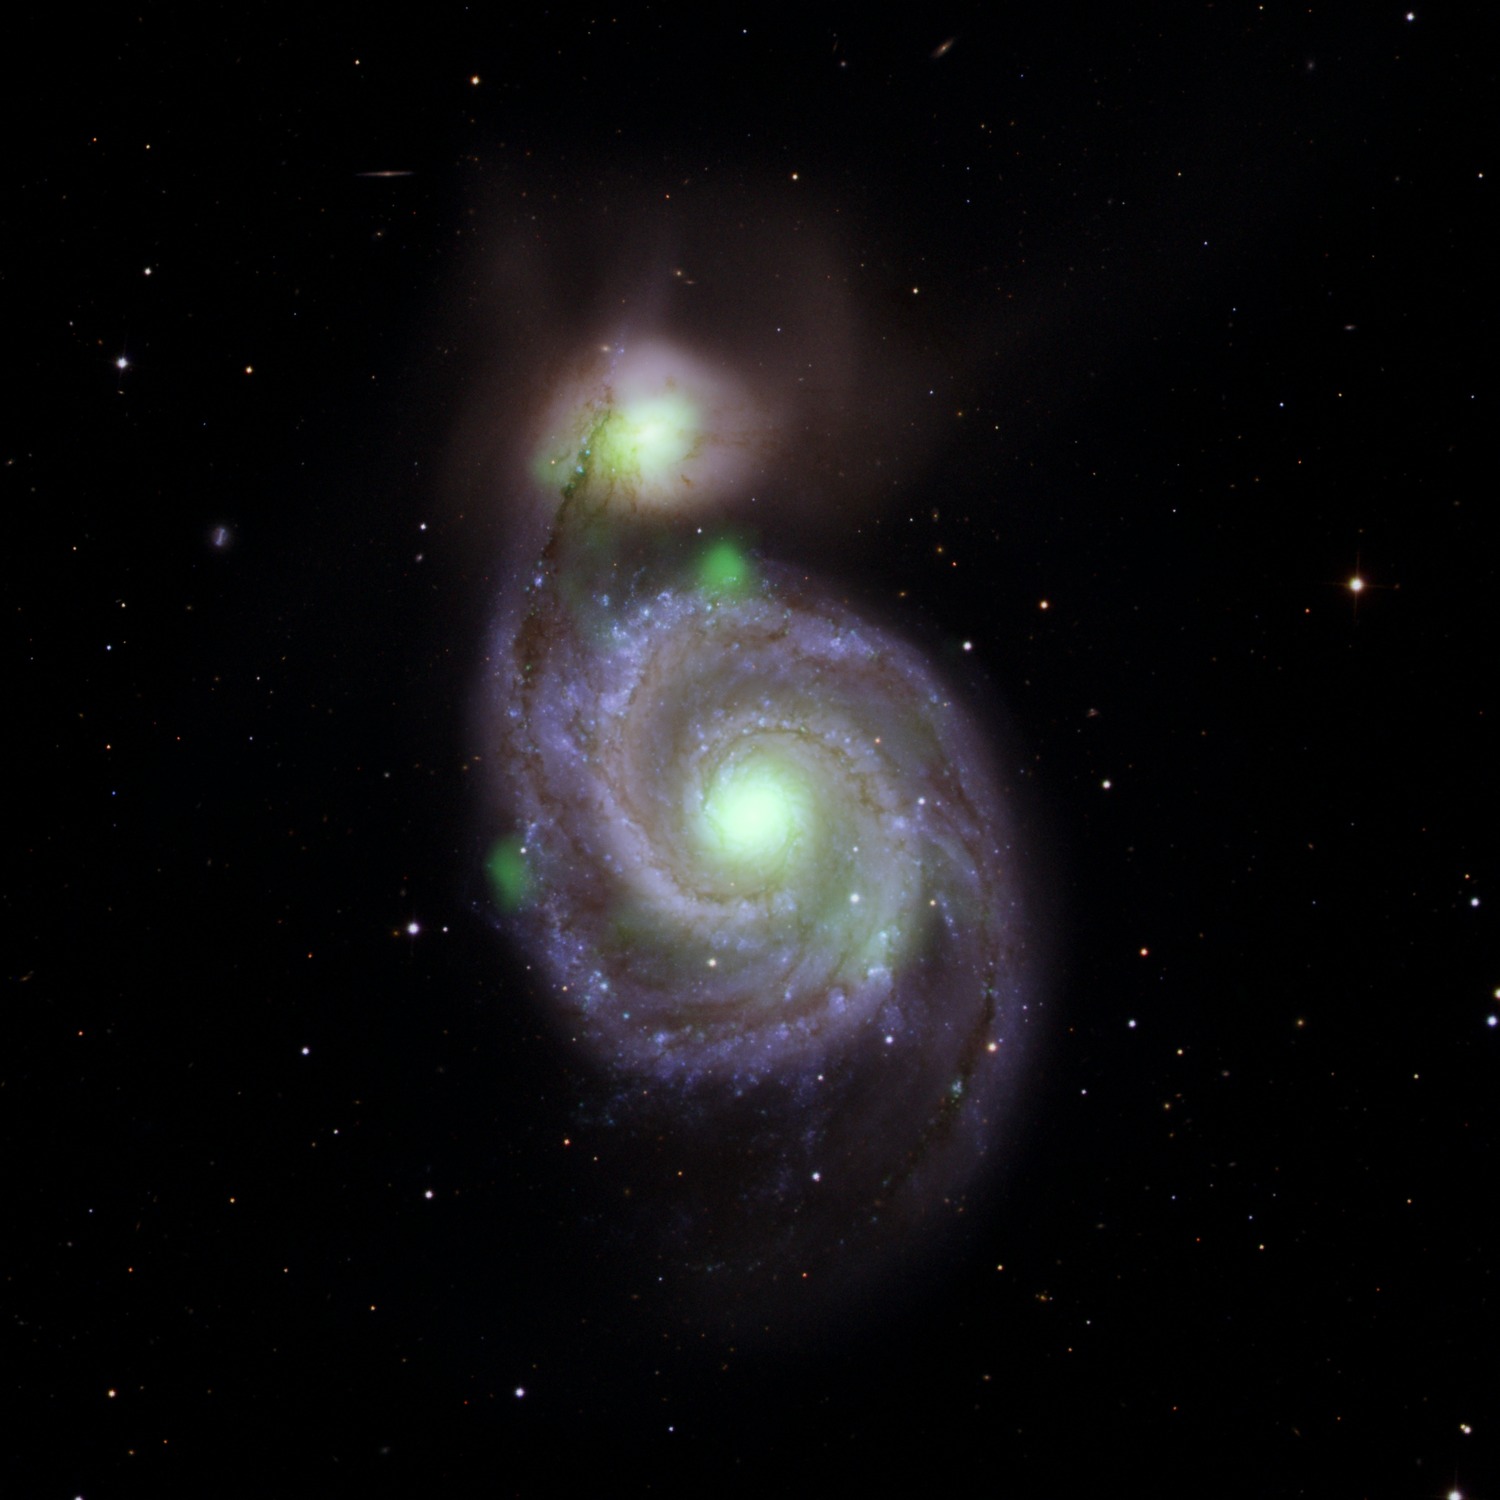 Image | A Hard X-ray Look at M51 | NuSTAR